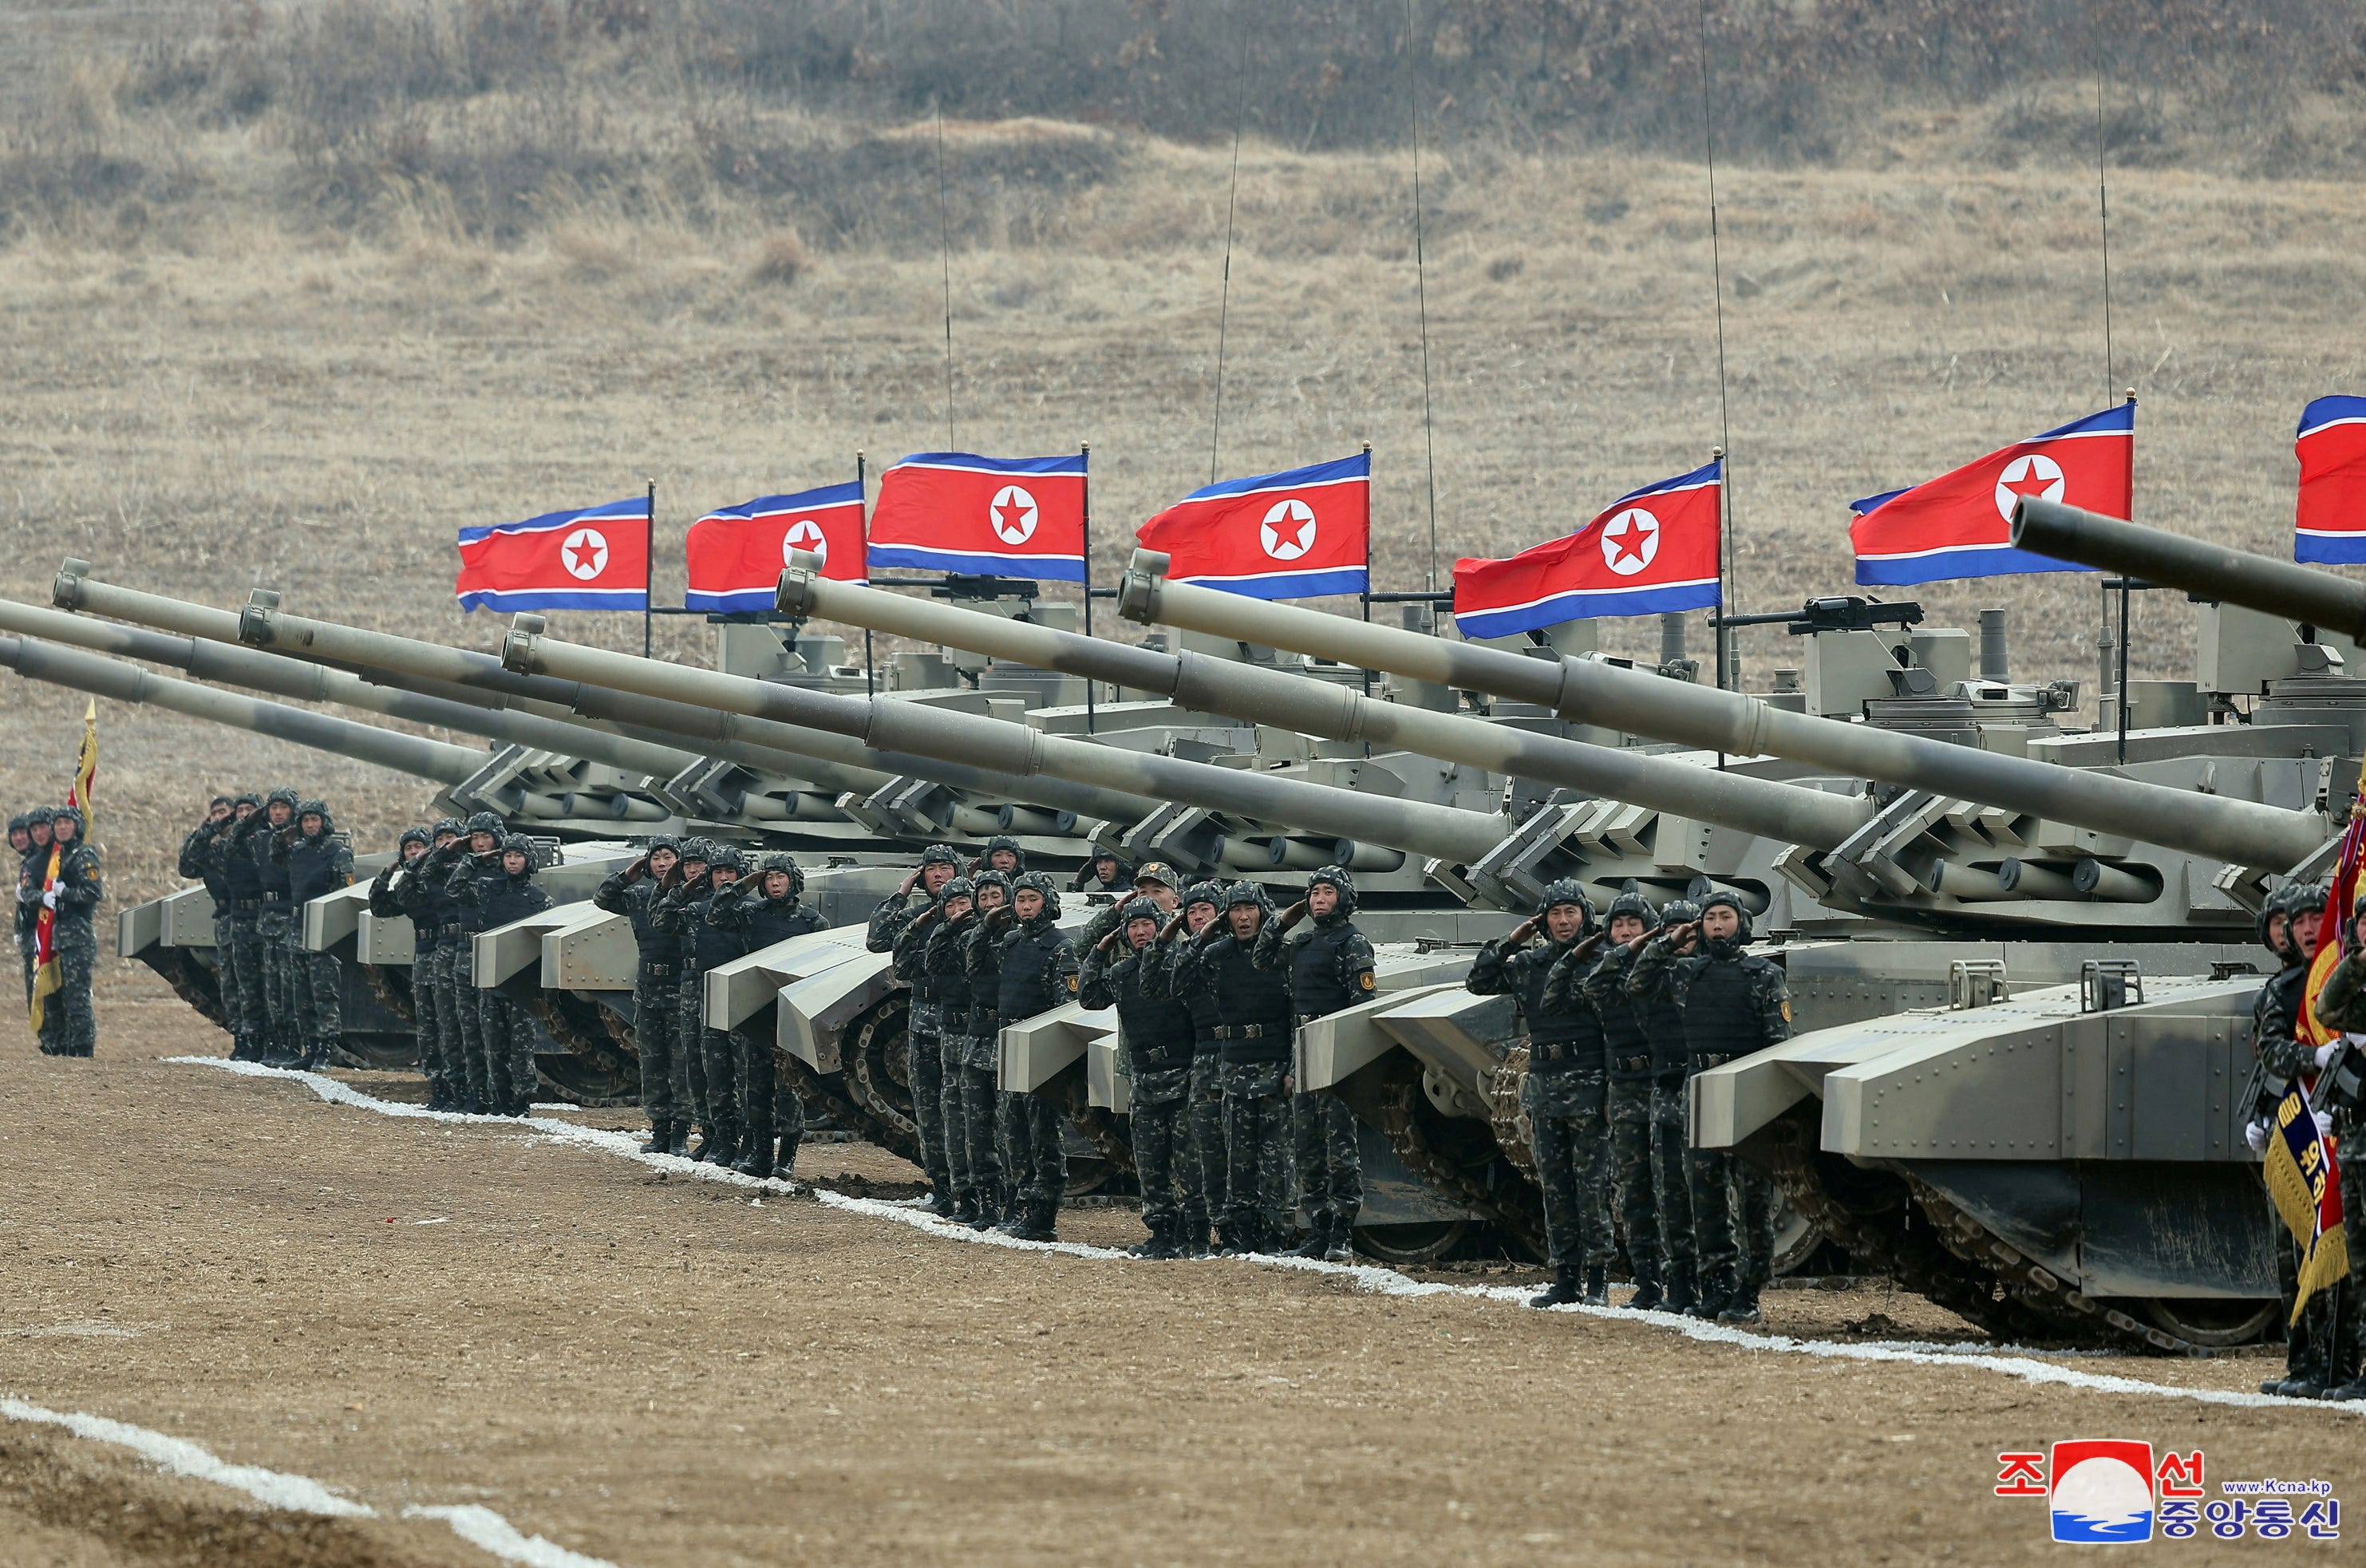 Militärangehörige salutieren während einer Militärdemonstration mit Panzereinheiten in Nordkorea.